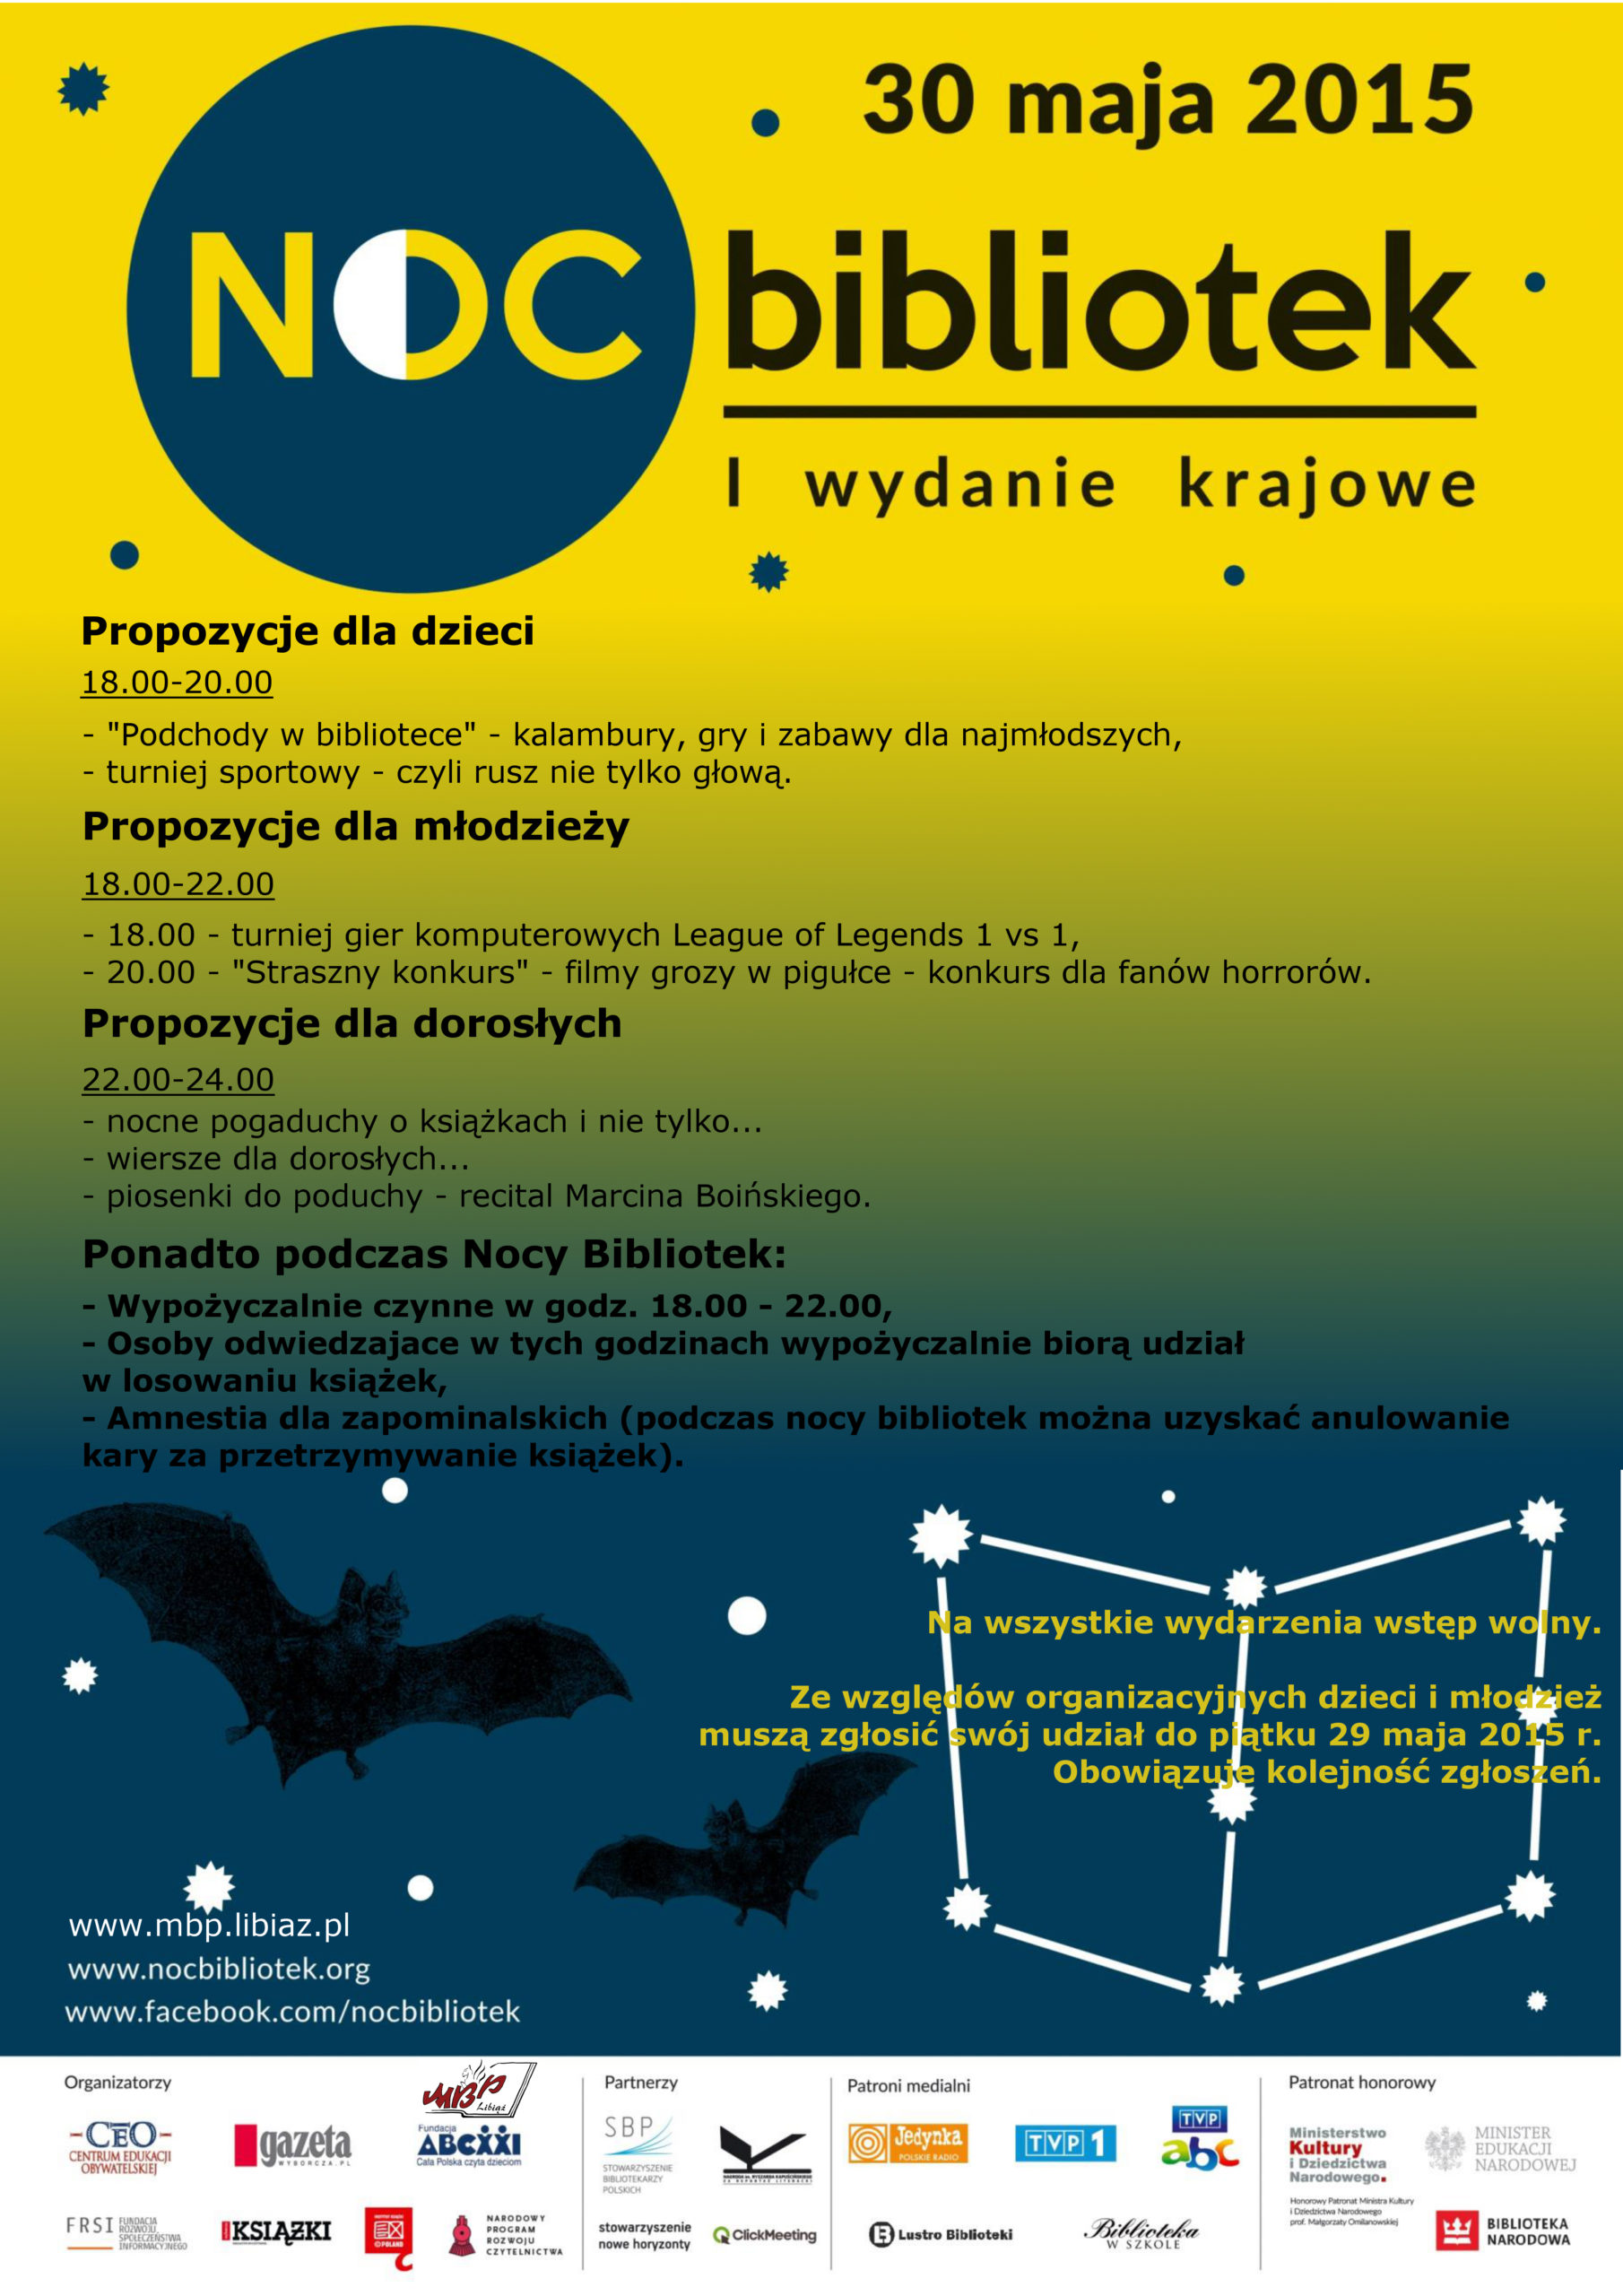 noic-bibliotek-plakat